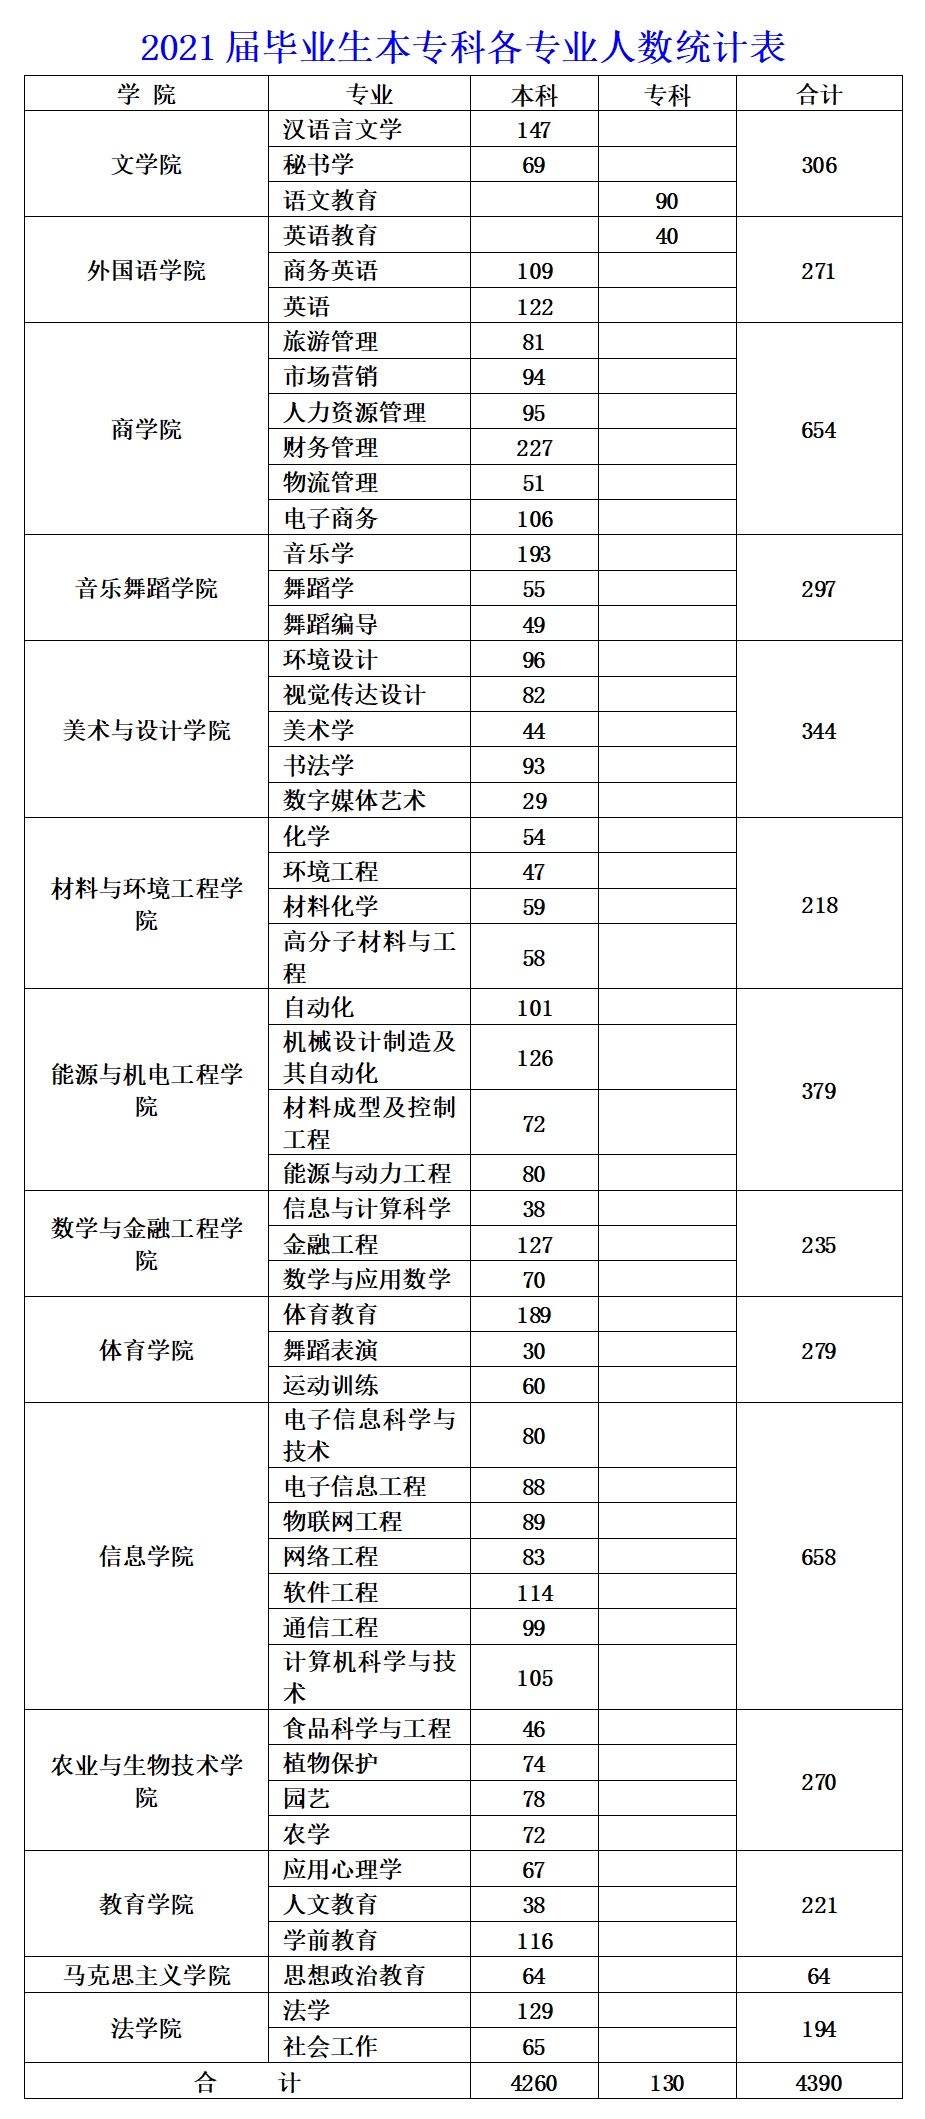 [2021年4月22日]湖南人文科技学院2021届毕业生春季校园双选会